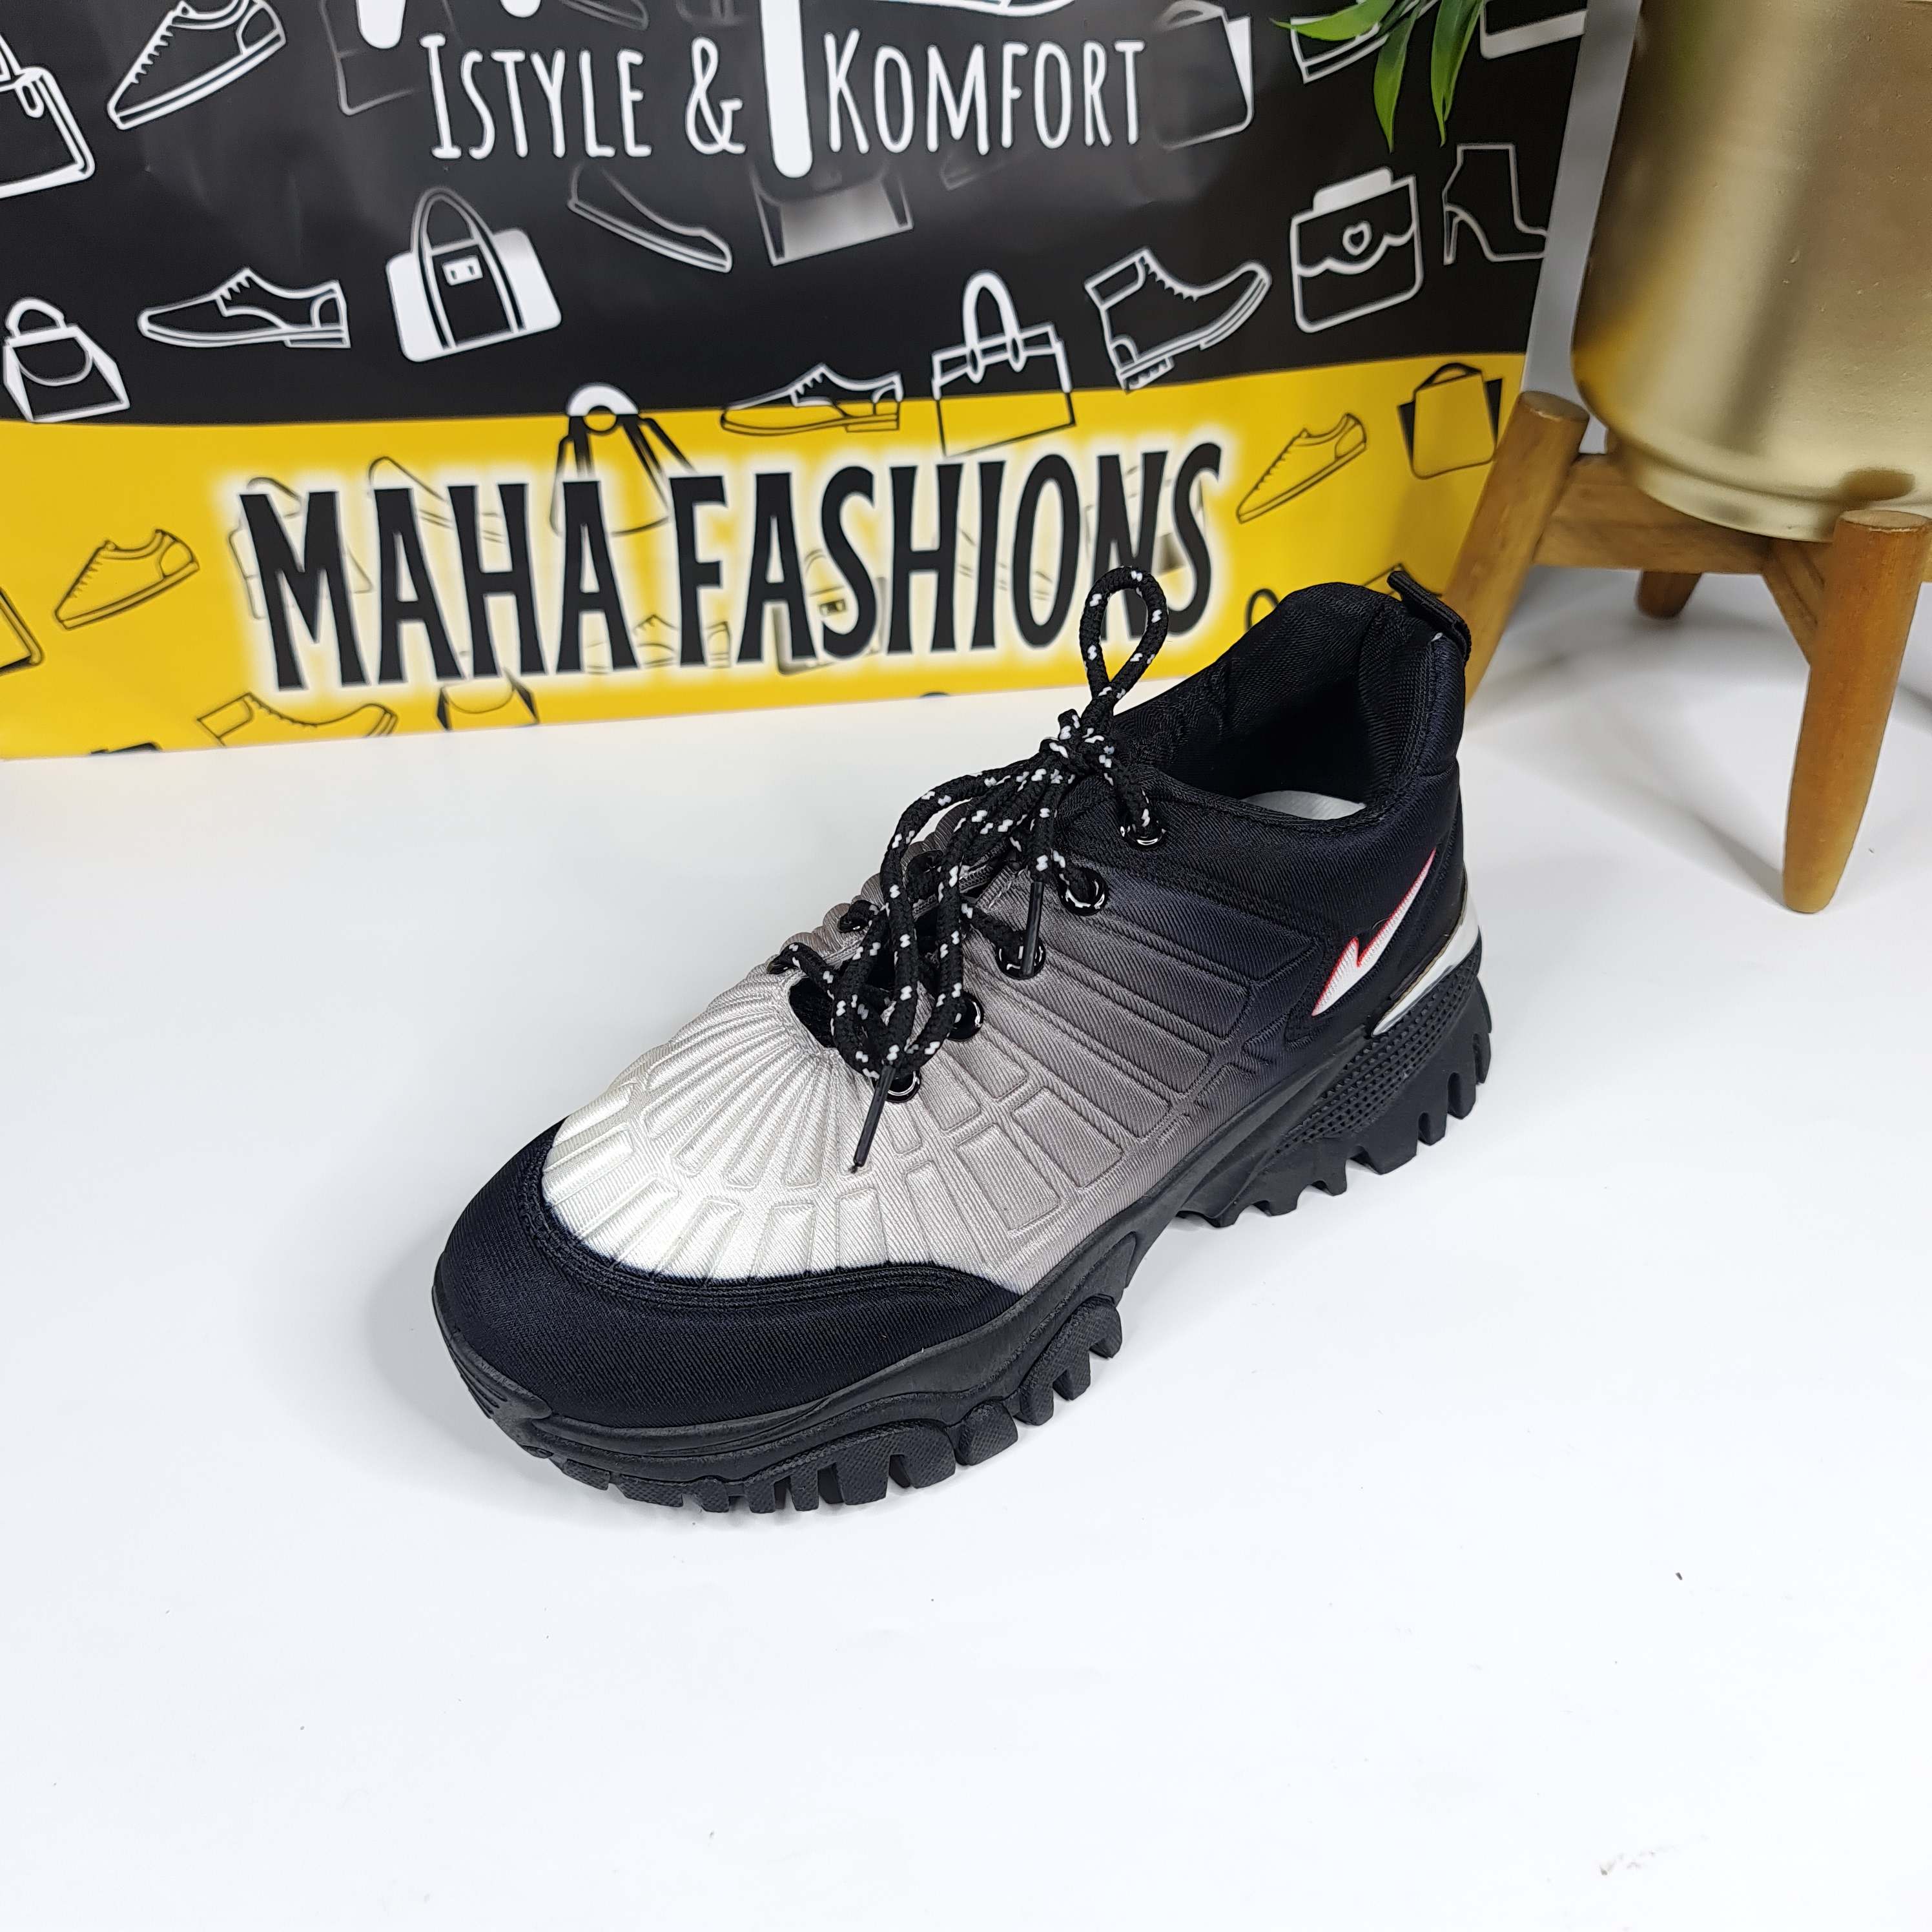 Shaded Women Casual Shoes - Maha fashions -  Women Casual Shoes